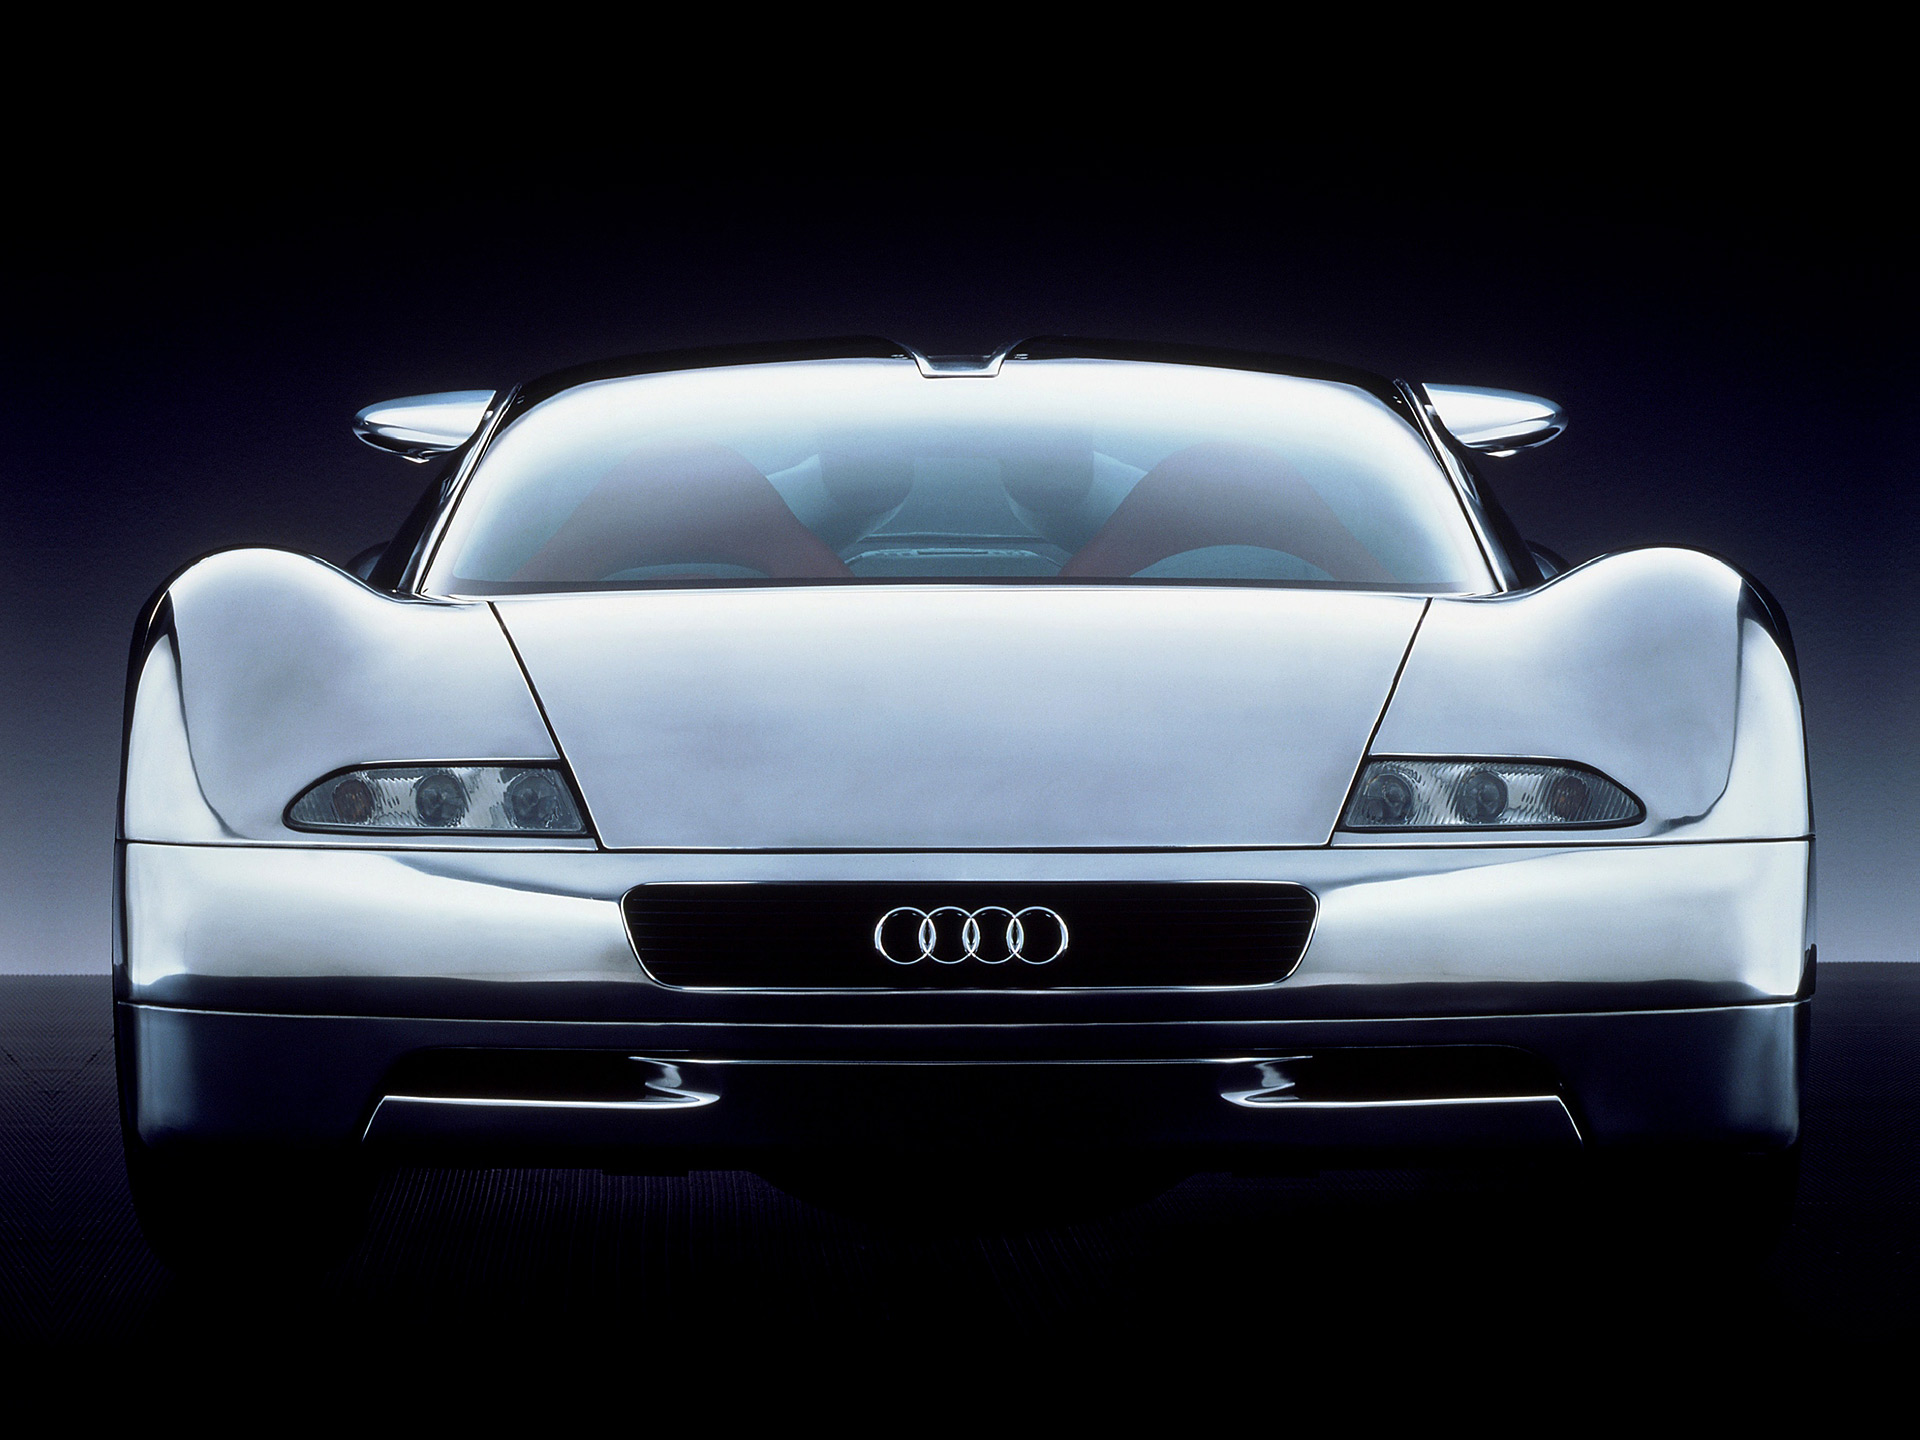  1991 Audi Avus Quattro Concept Wallpaper.